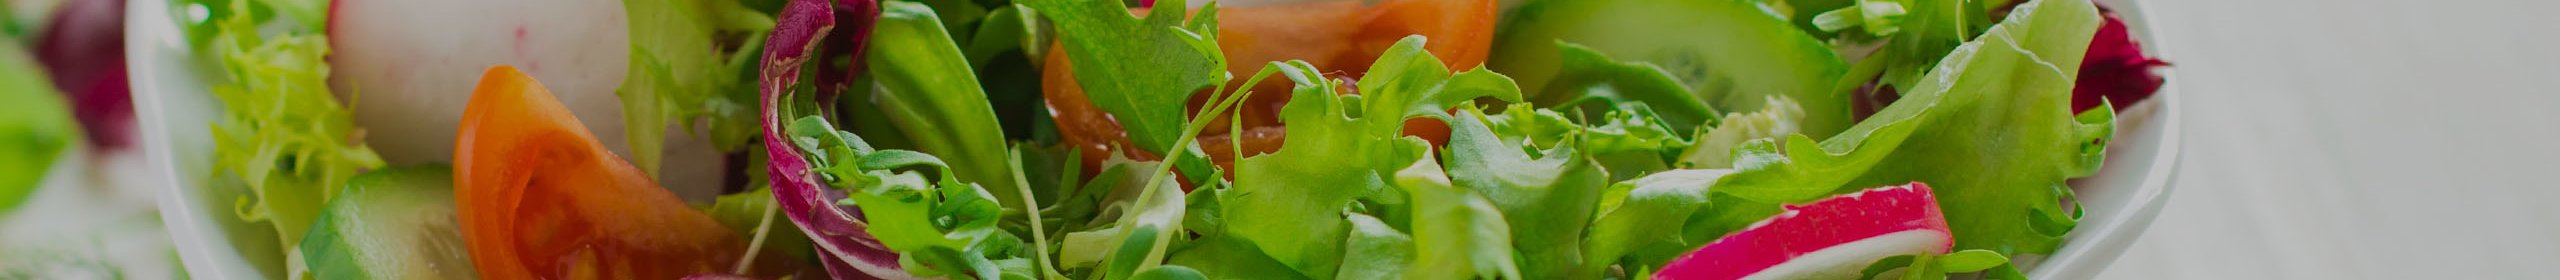 Salat mit Bautzner Tafelessig